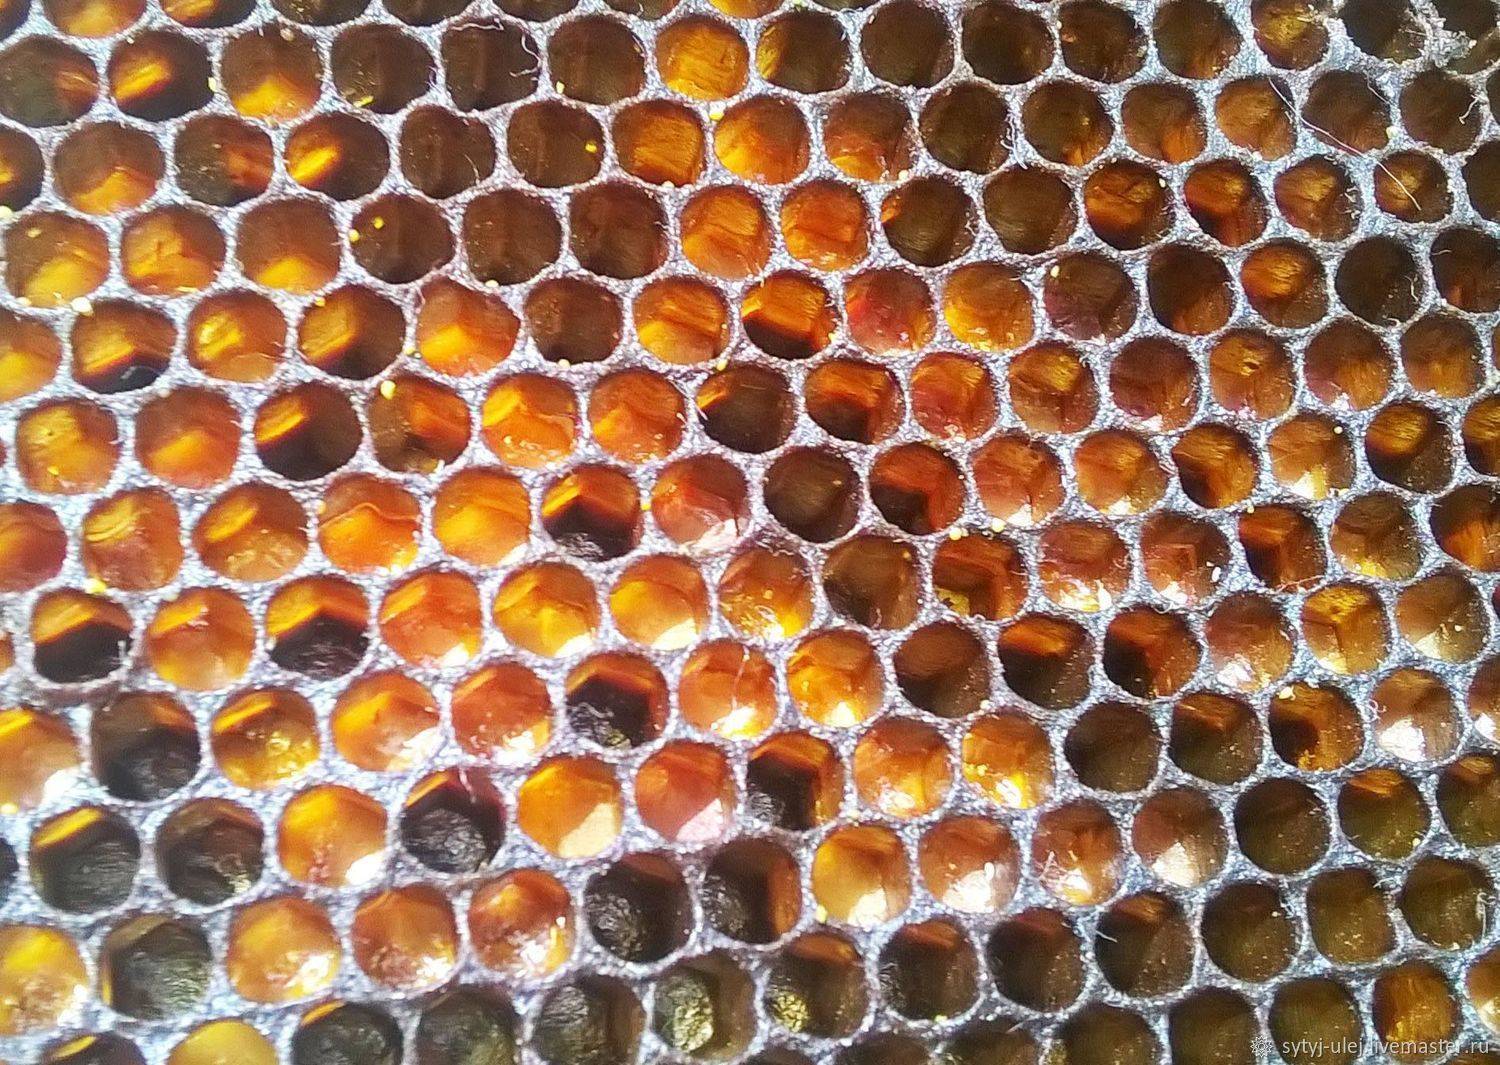 Пчелиная перга: лечебные свойства как принимать, польза и вред